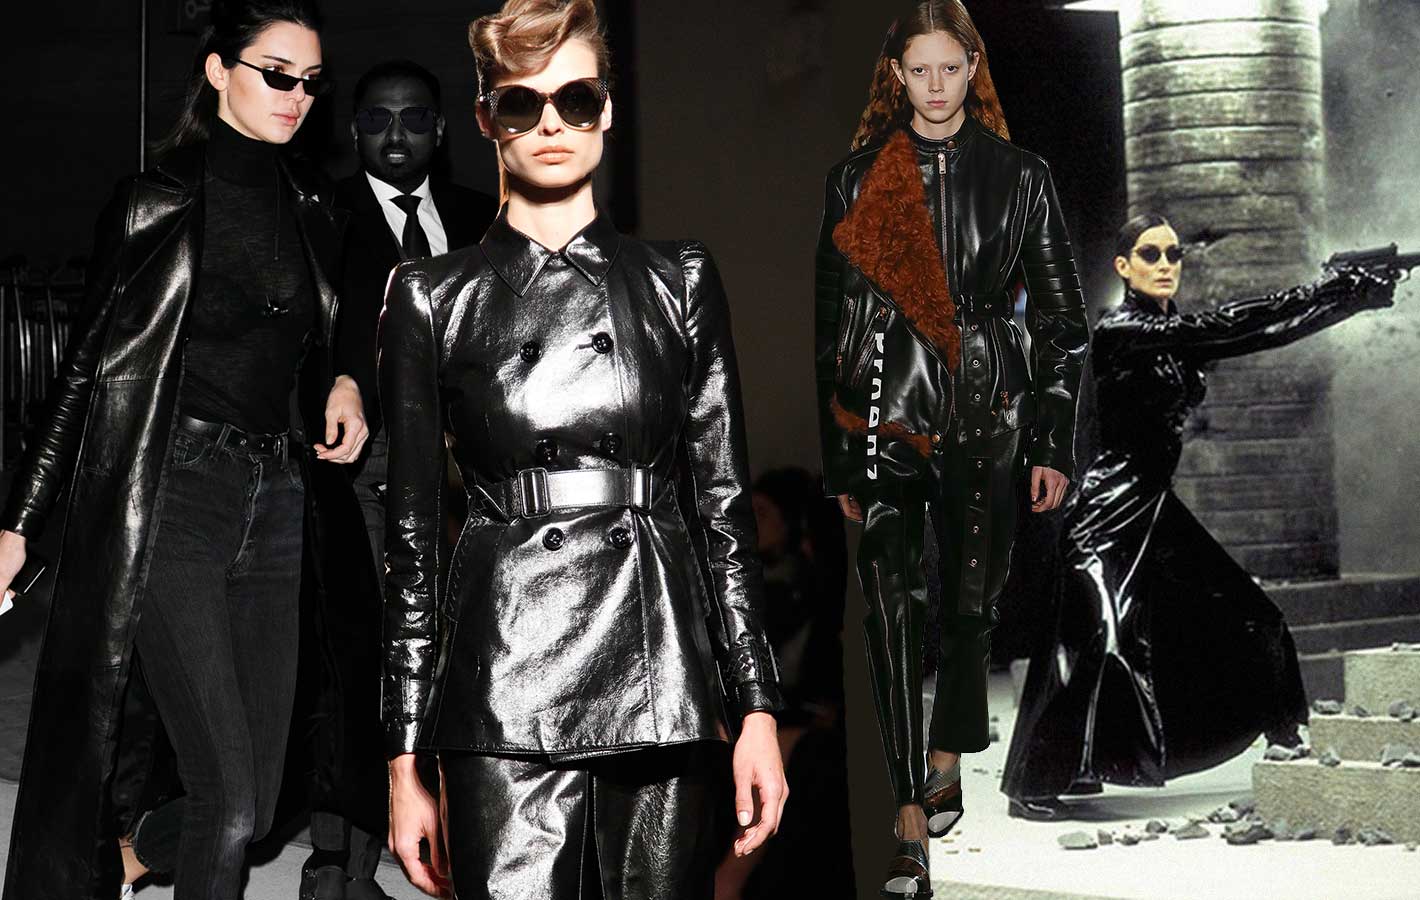 Lakierowane płaszcze, kombinezony i geometryczne okulary: moda w stylu „Matrixa” to hit tego sezonu!